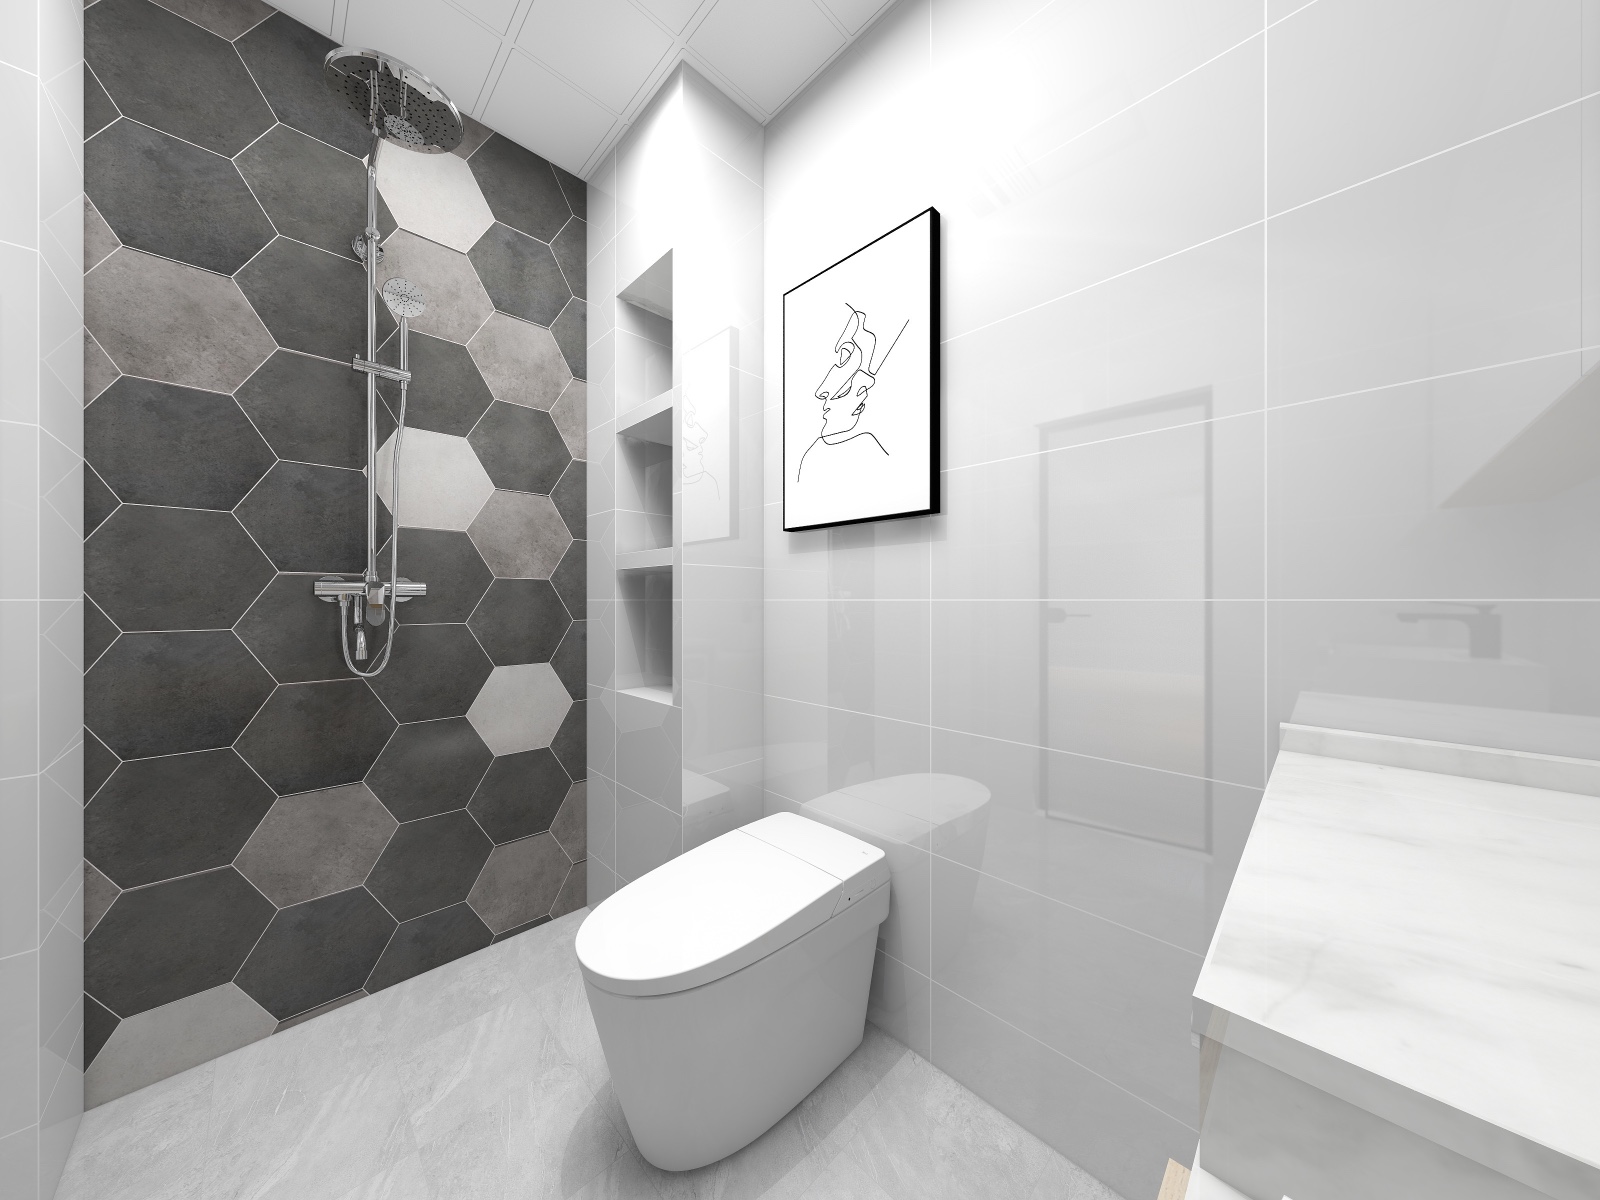 原木色浴室柜与浅灰色墙砖,一冷一暖,营造轻松空间